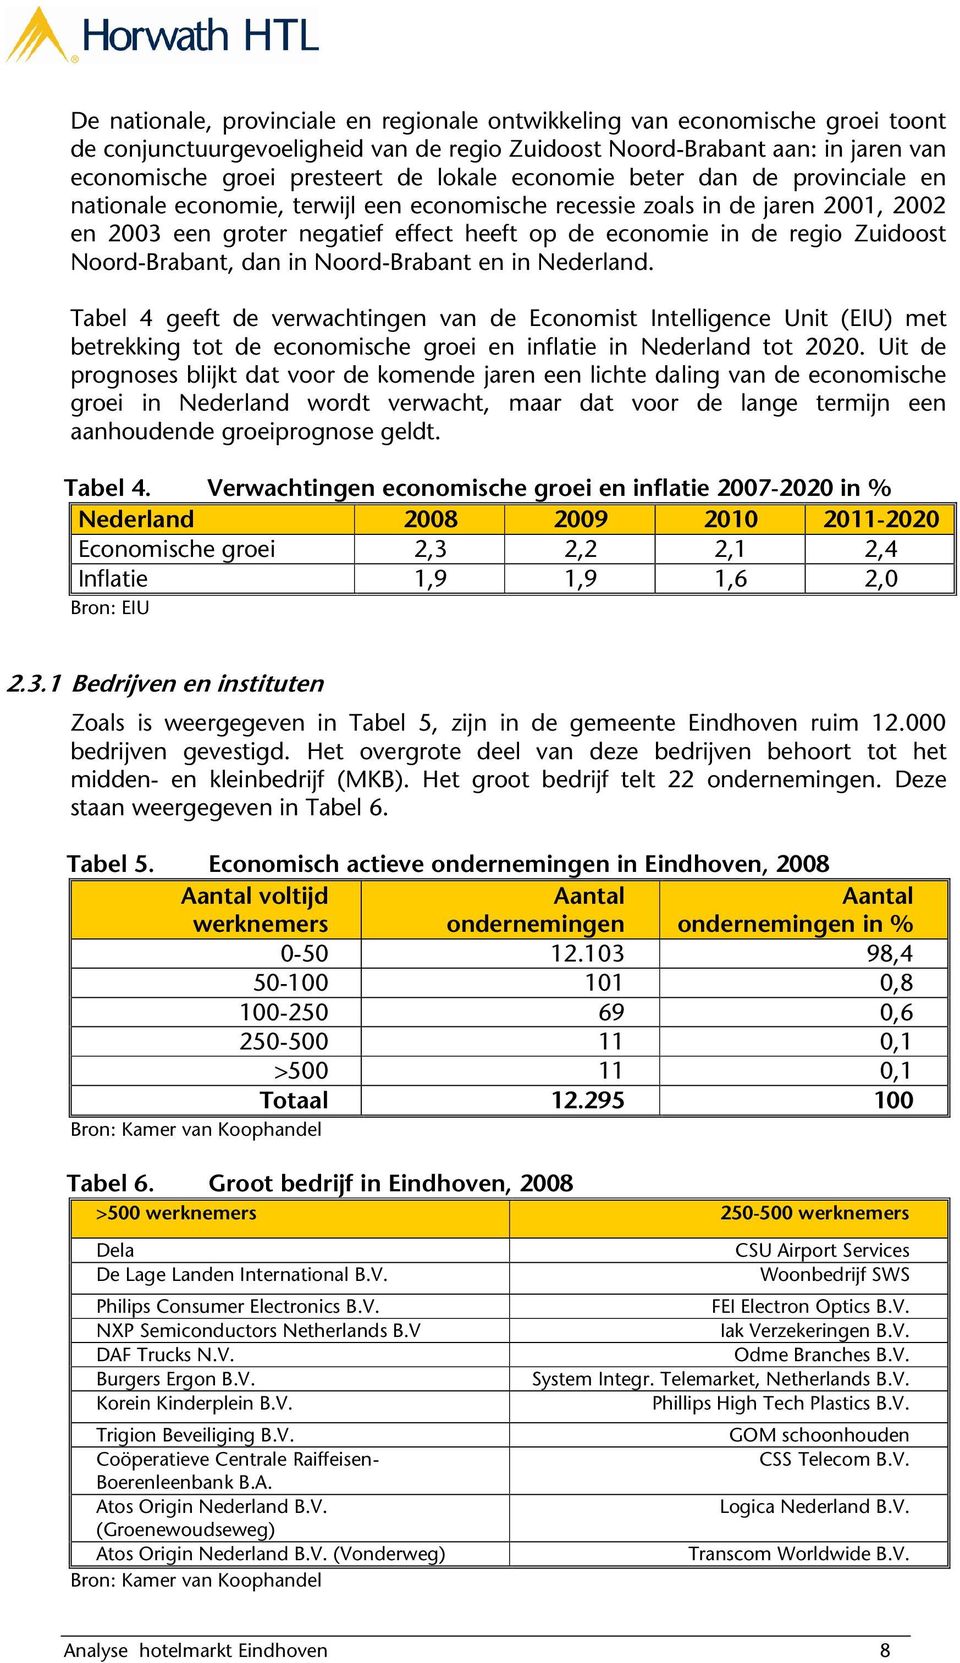 Noord-Brabant, dan in Noord-Brabant en in Nederland. Tabel 4 geeft de verwachtingen van de Economist Intelligence Unit (EIU) met betrekking tot de economische groei en inflatie in Nederland tot 2020.